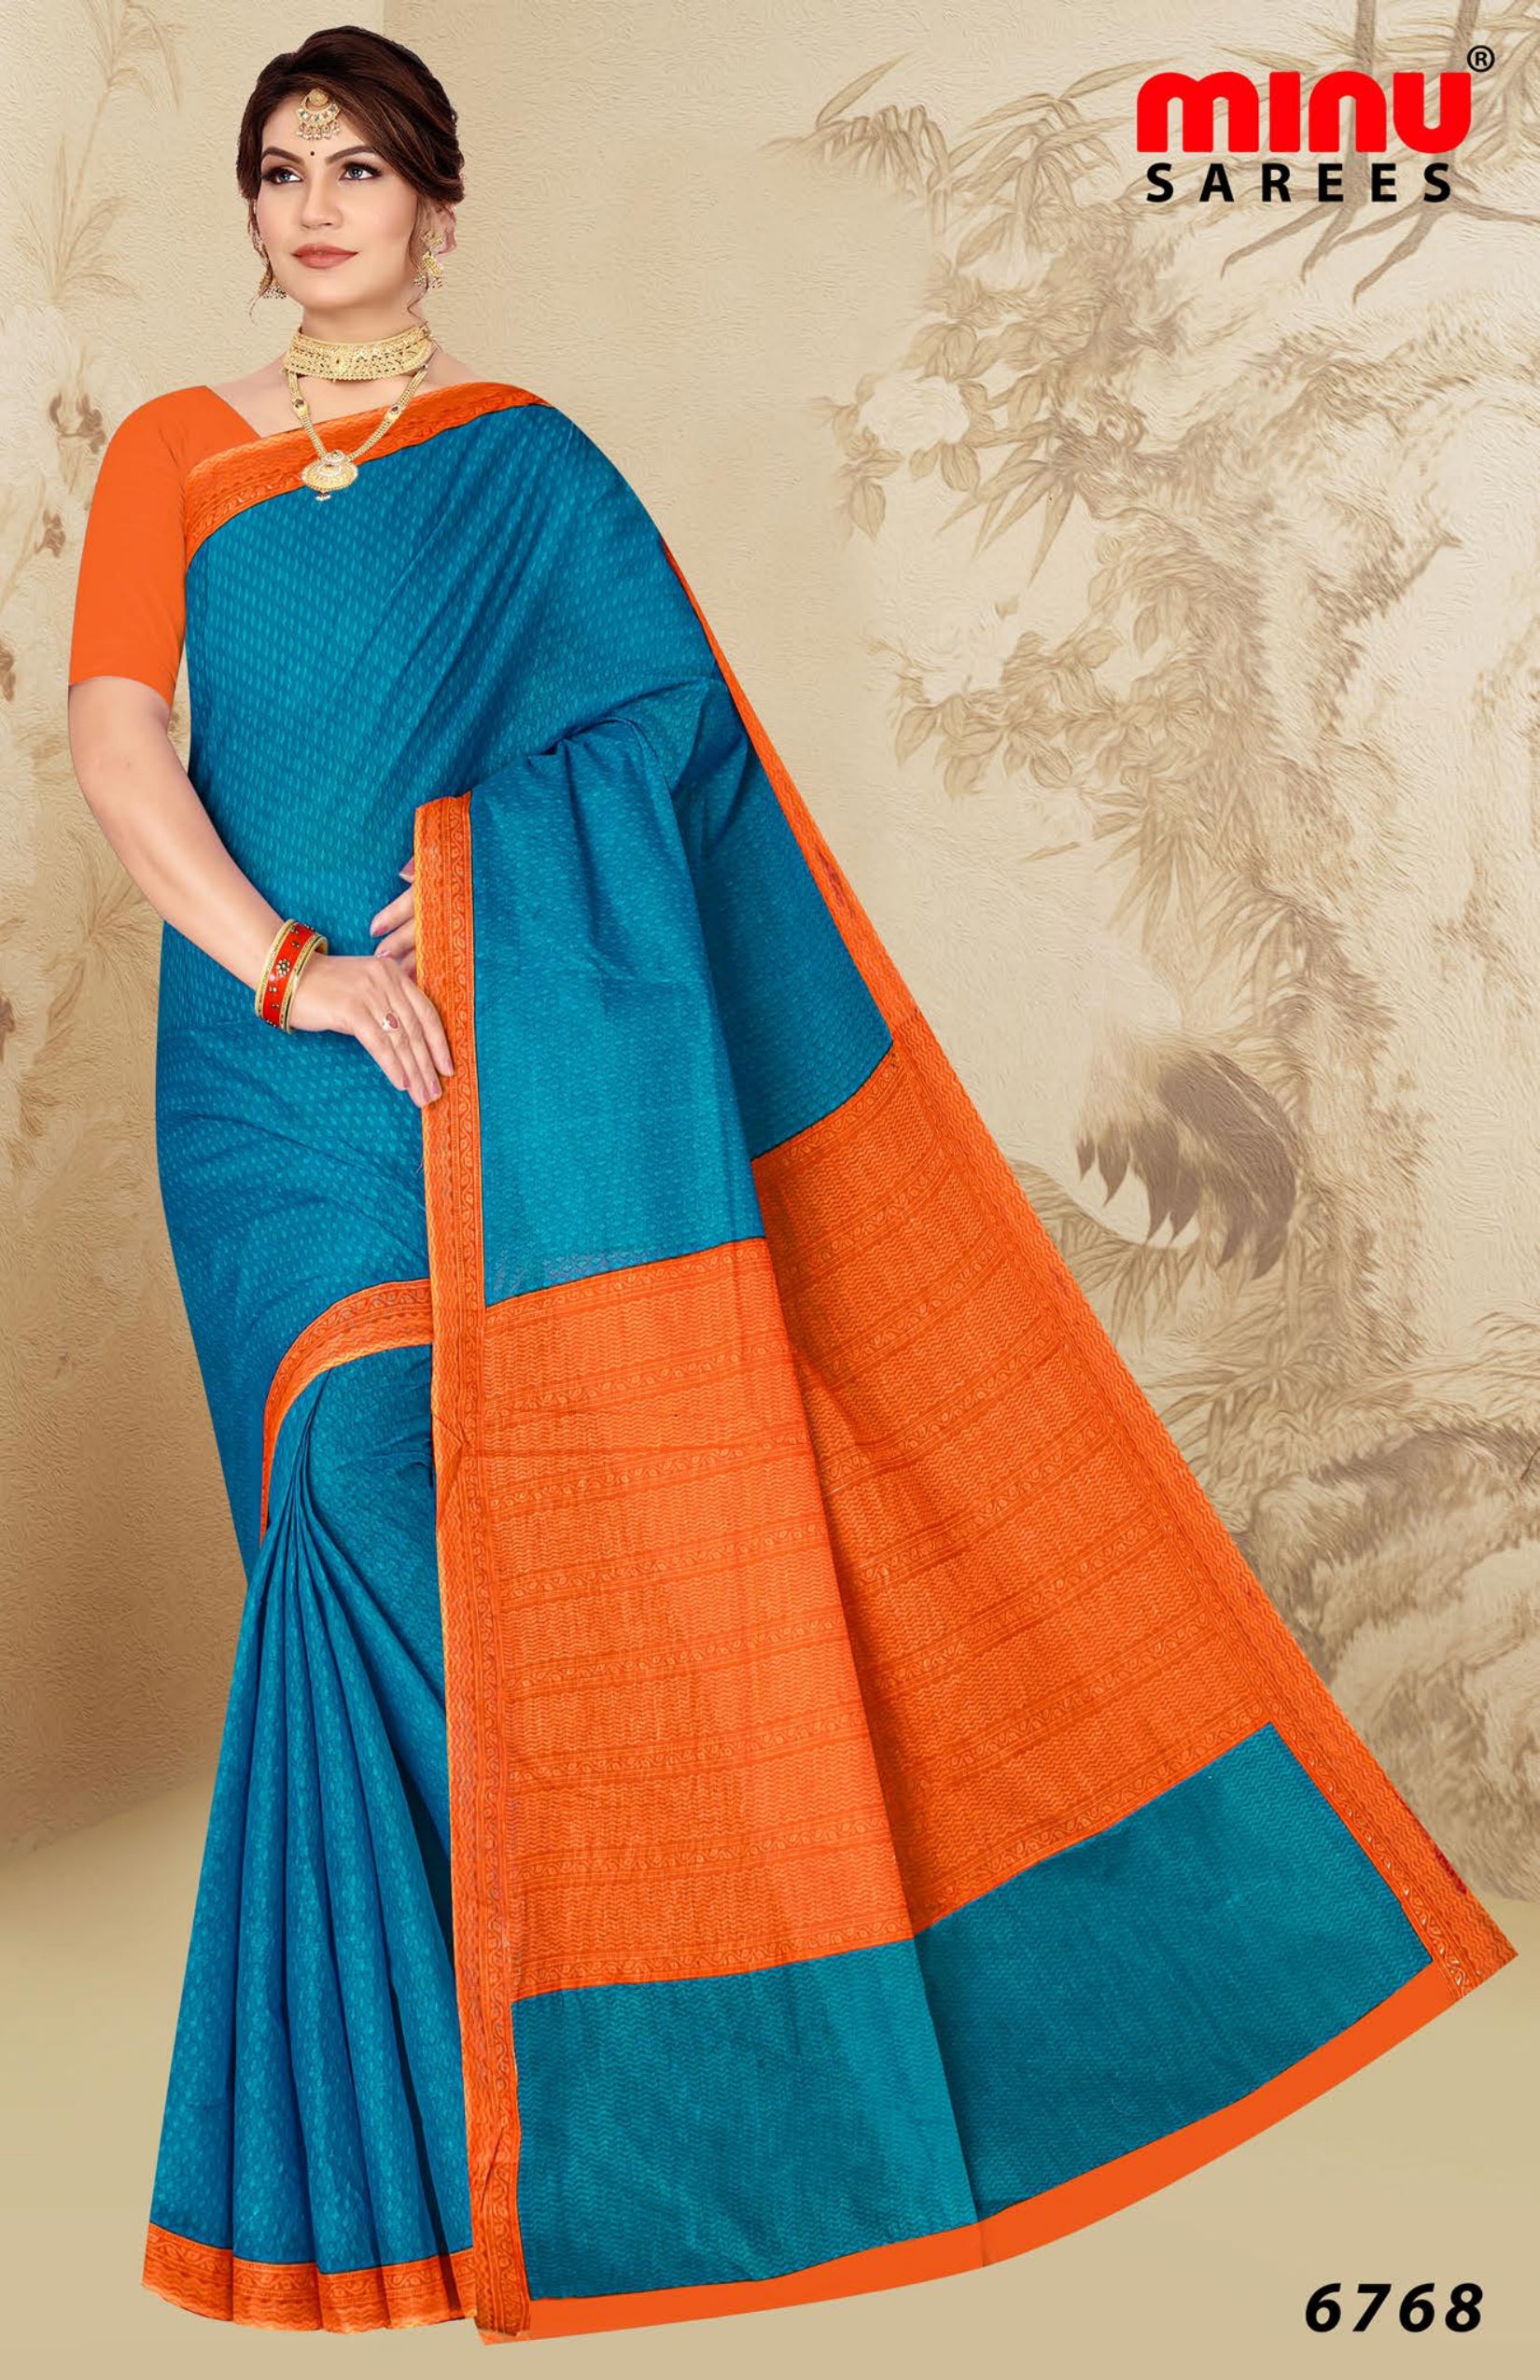 women wearing blue and orange printed cotton saree